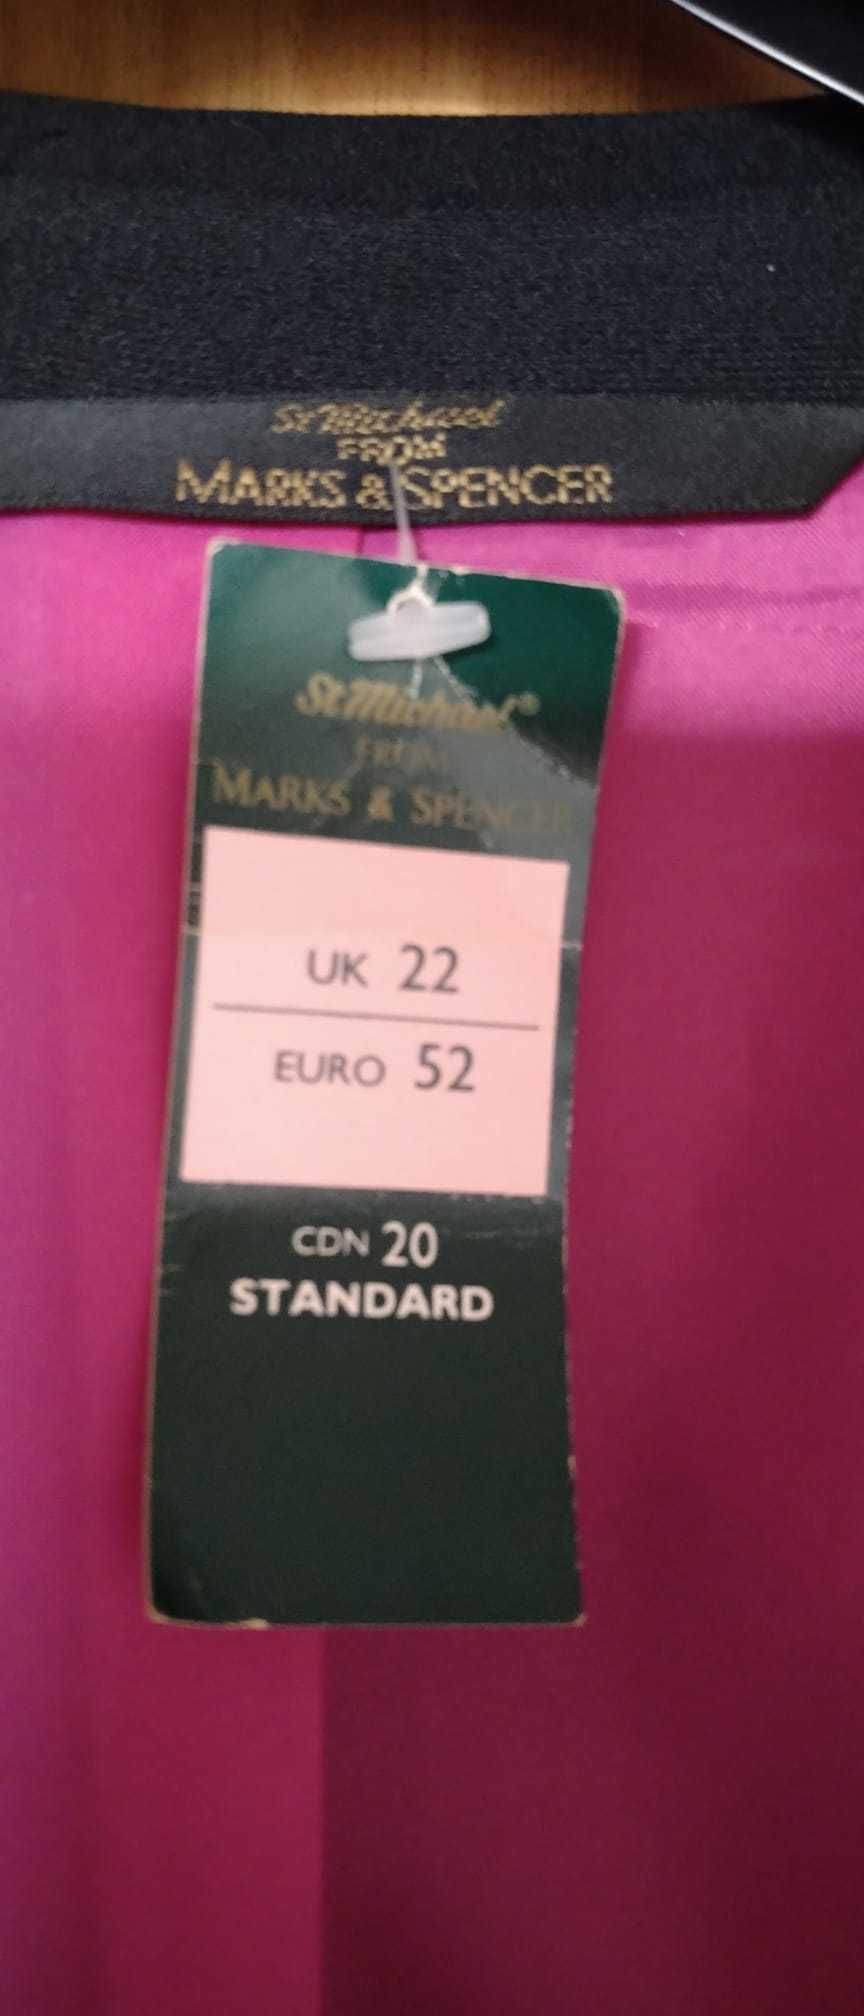 Sacou de damă, negru, Marks&Spencer, măsura 22 (52), nou, cu etichetă